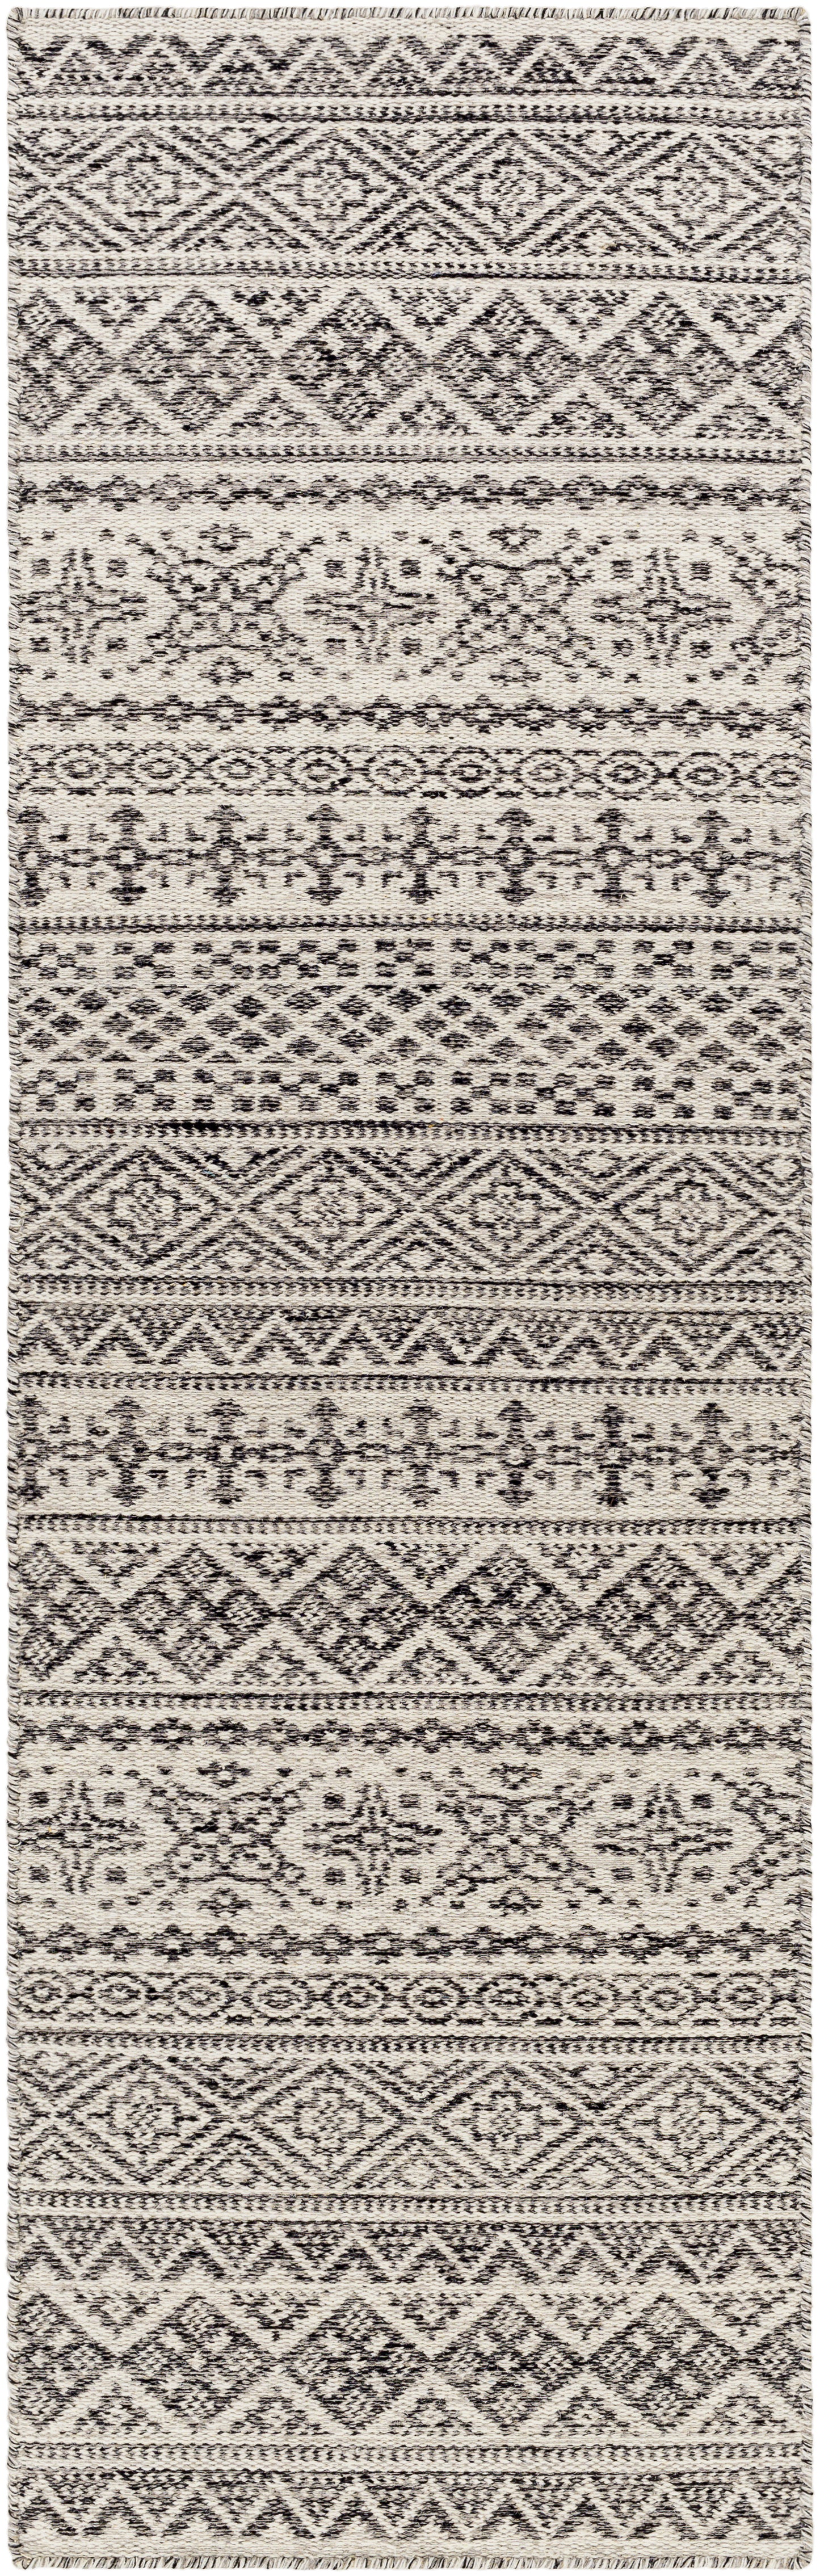 Mardin 29487 Hand Woven Wool Indoor Area Rug by Surya Rugs